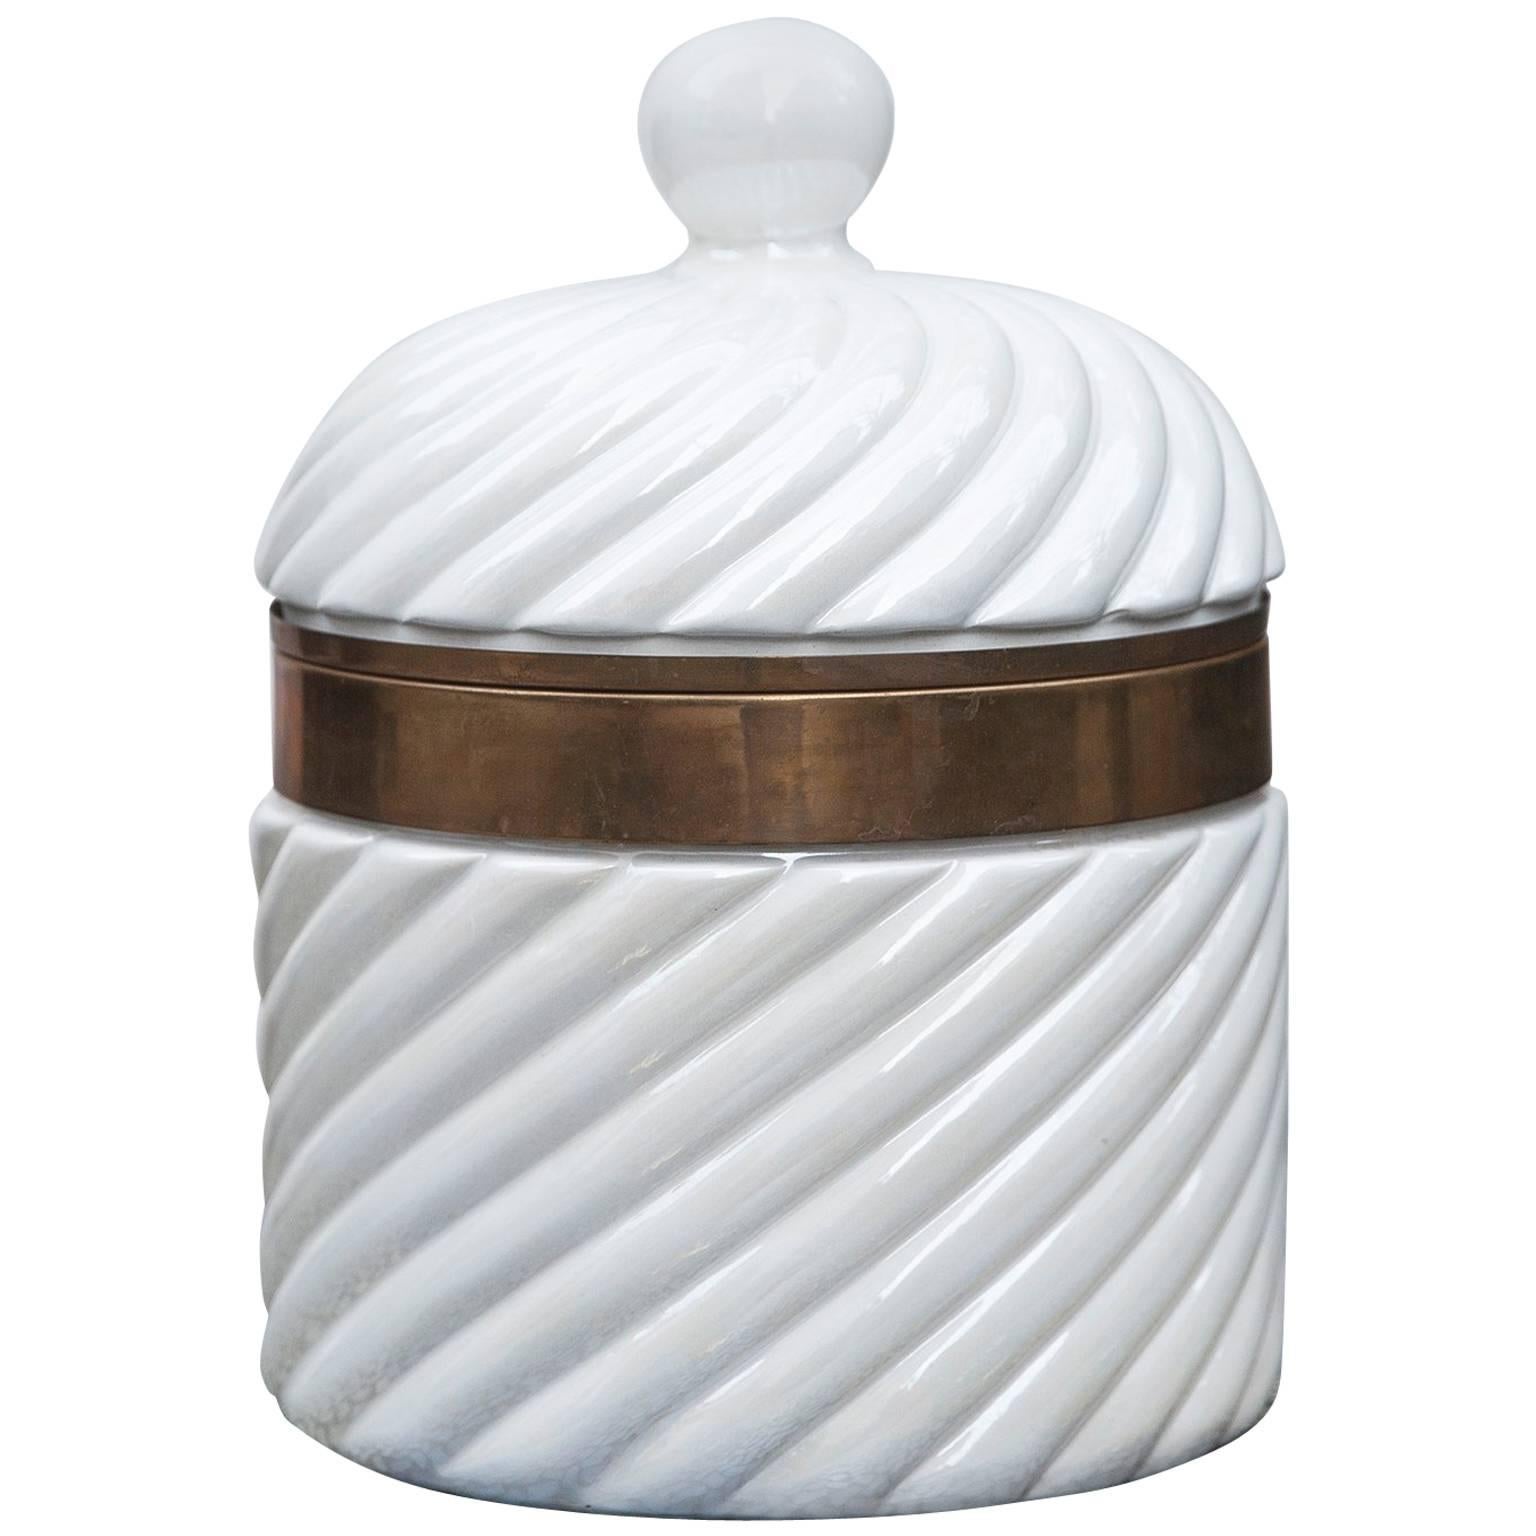 Tommaso Barbi Hollywood Regency Style Porcelain Ice Bucket, Italy, 1970